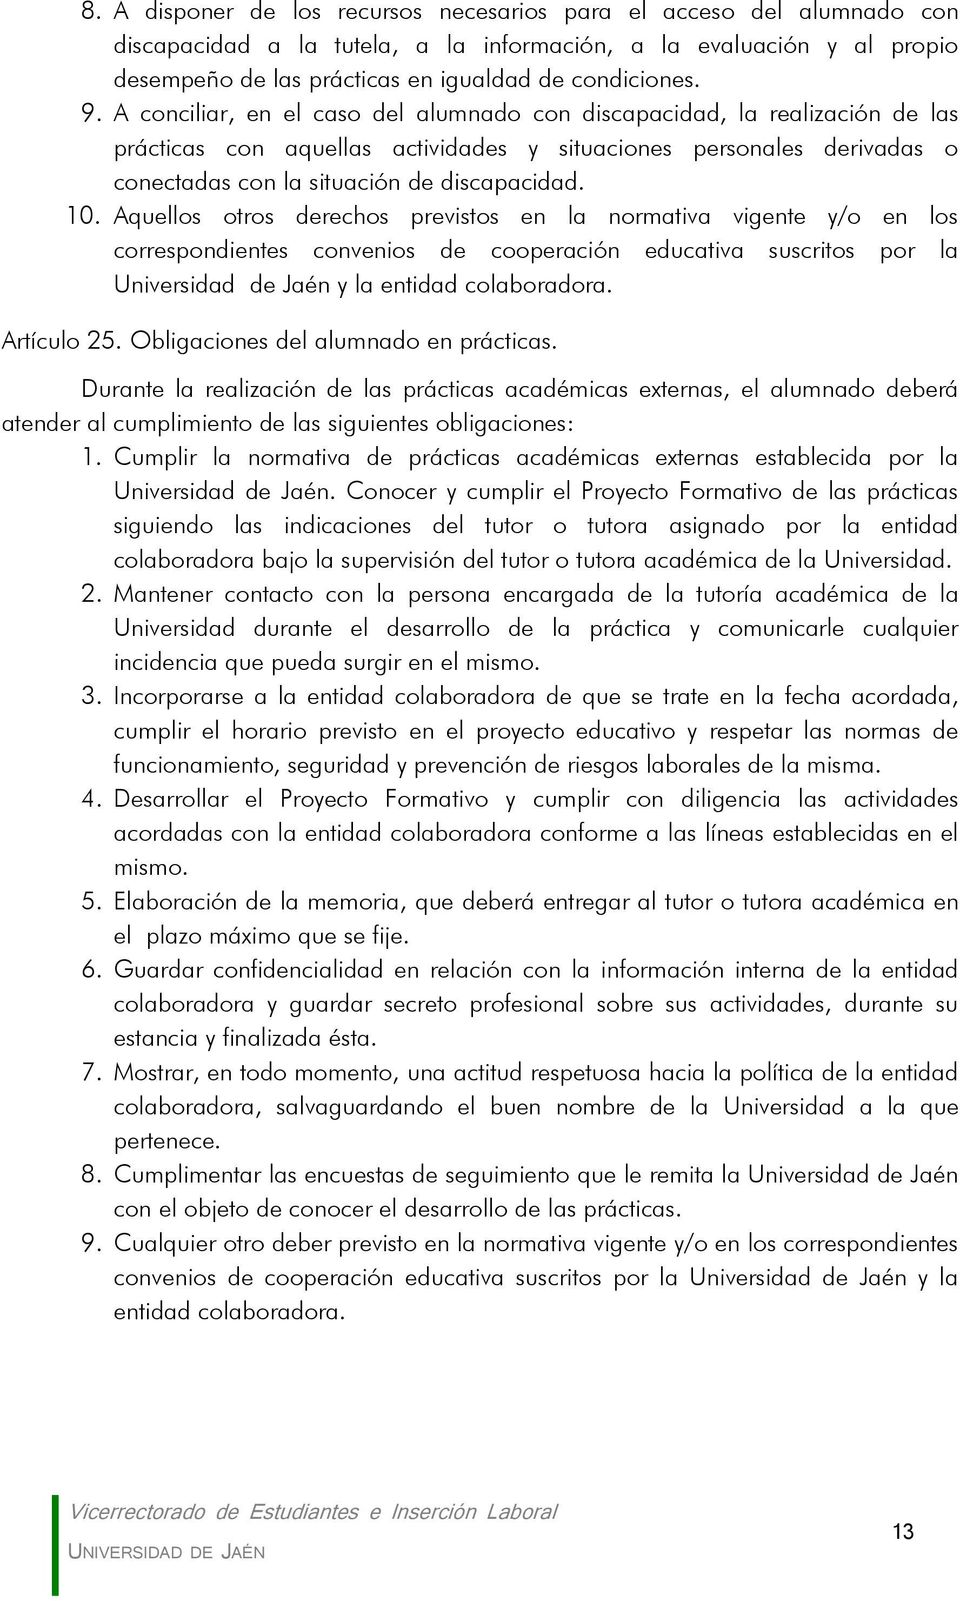 Aquellos otros derechos previstos en la normativa vigente y/o en los correspondientes convenios de cooperación educativa suscritos por la Universidad de Jaén y la entidad colaboradora. Artículo 25.